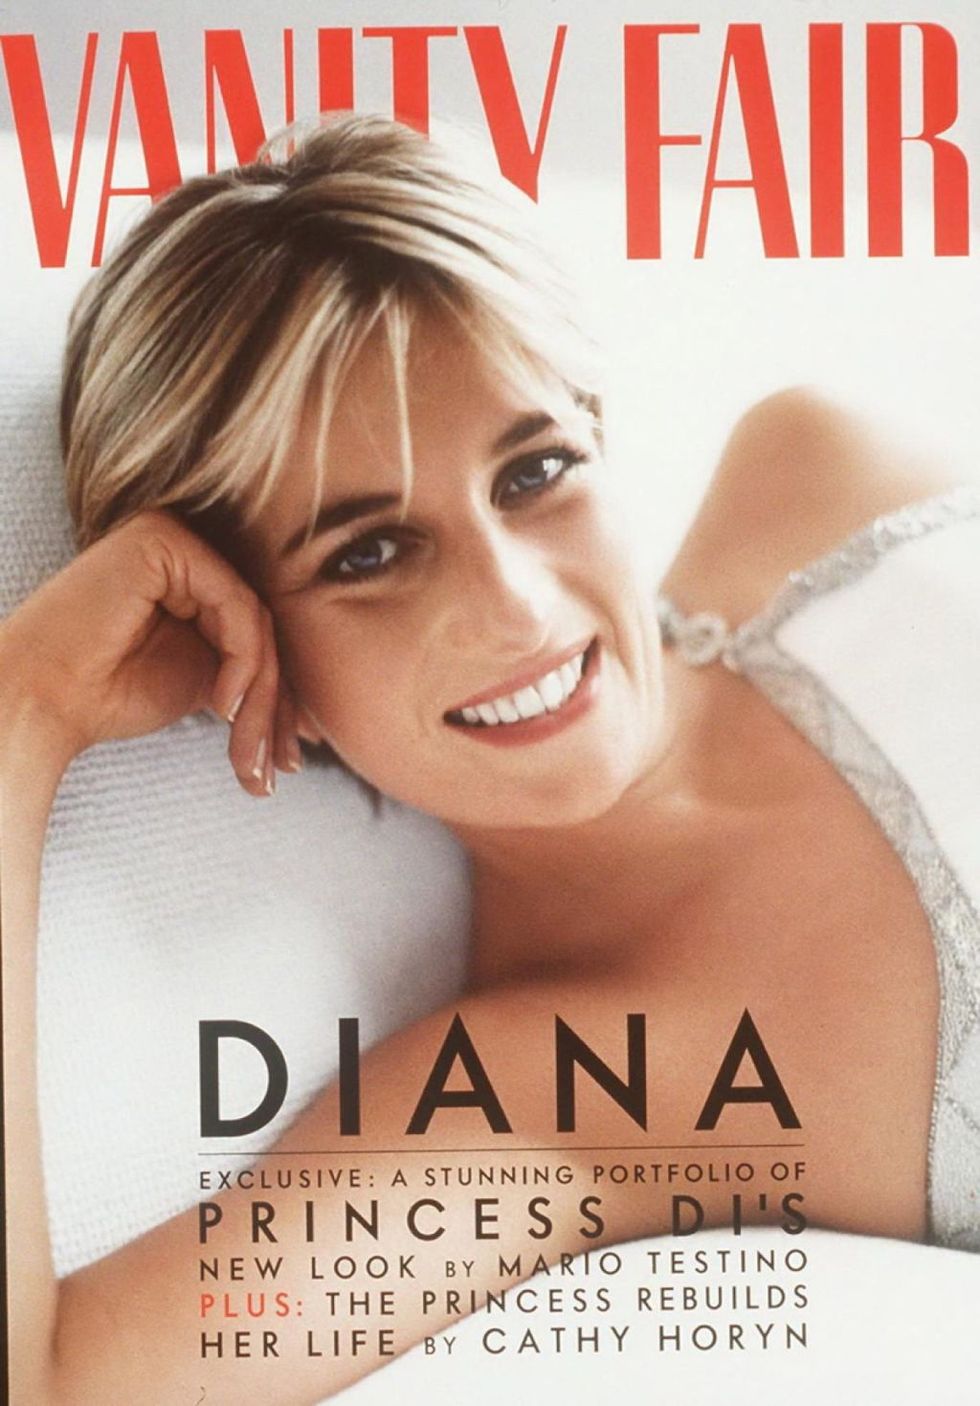 Princess Diana Vanity Fair cover